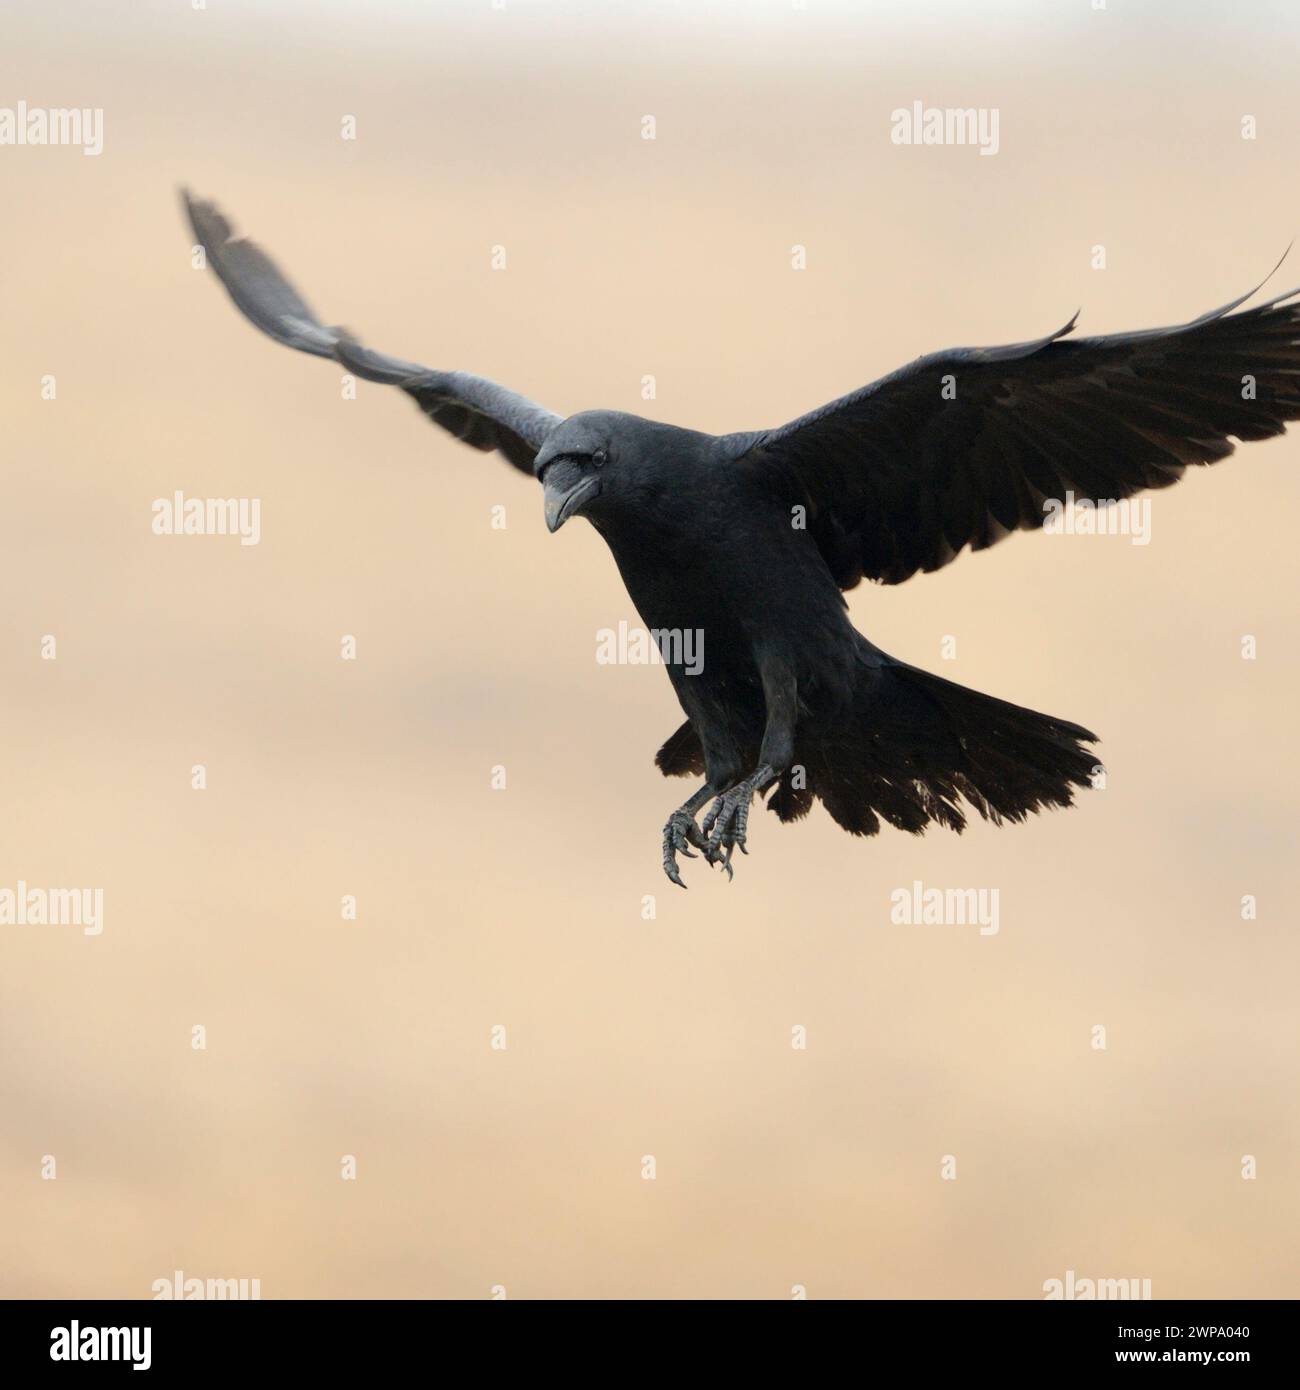 Corbeau commun ( Corvus corax ) volant avec de grandes ailes ouvertes devant un beau fond propre coloré, faune, Europe. Banque D'Images